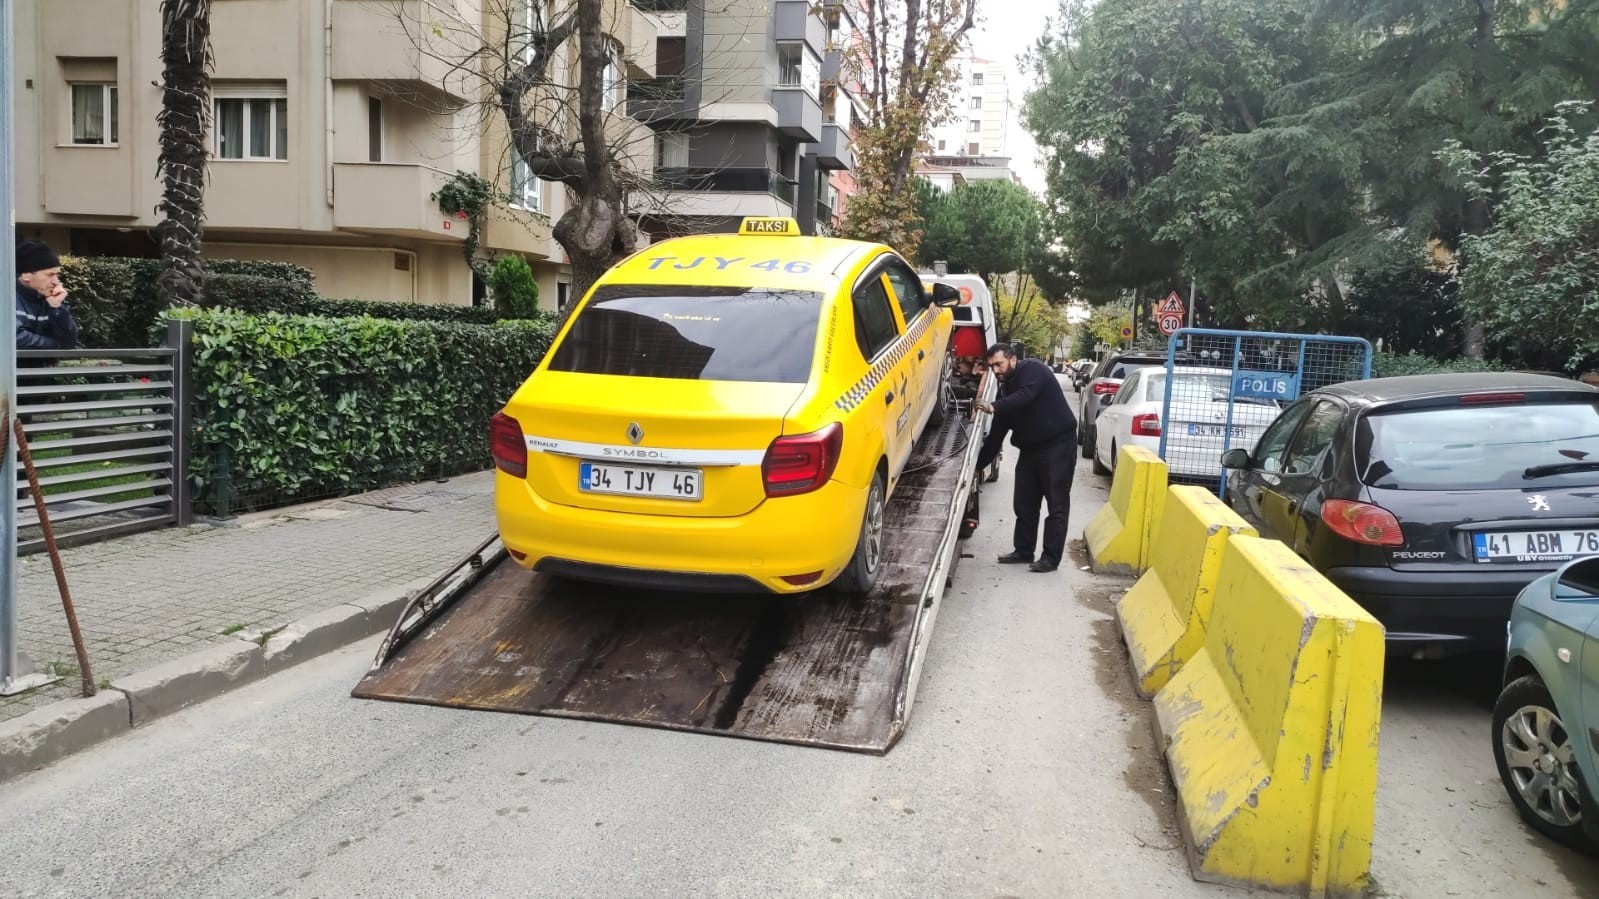 Kadıköy’de müşterisine hakaret eden taksicinin araç kullanım belgesi iptal edildi